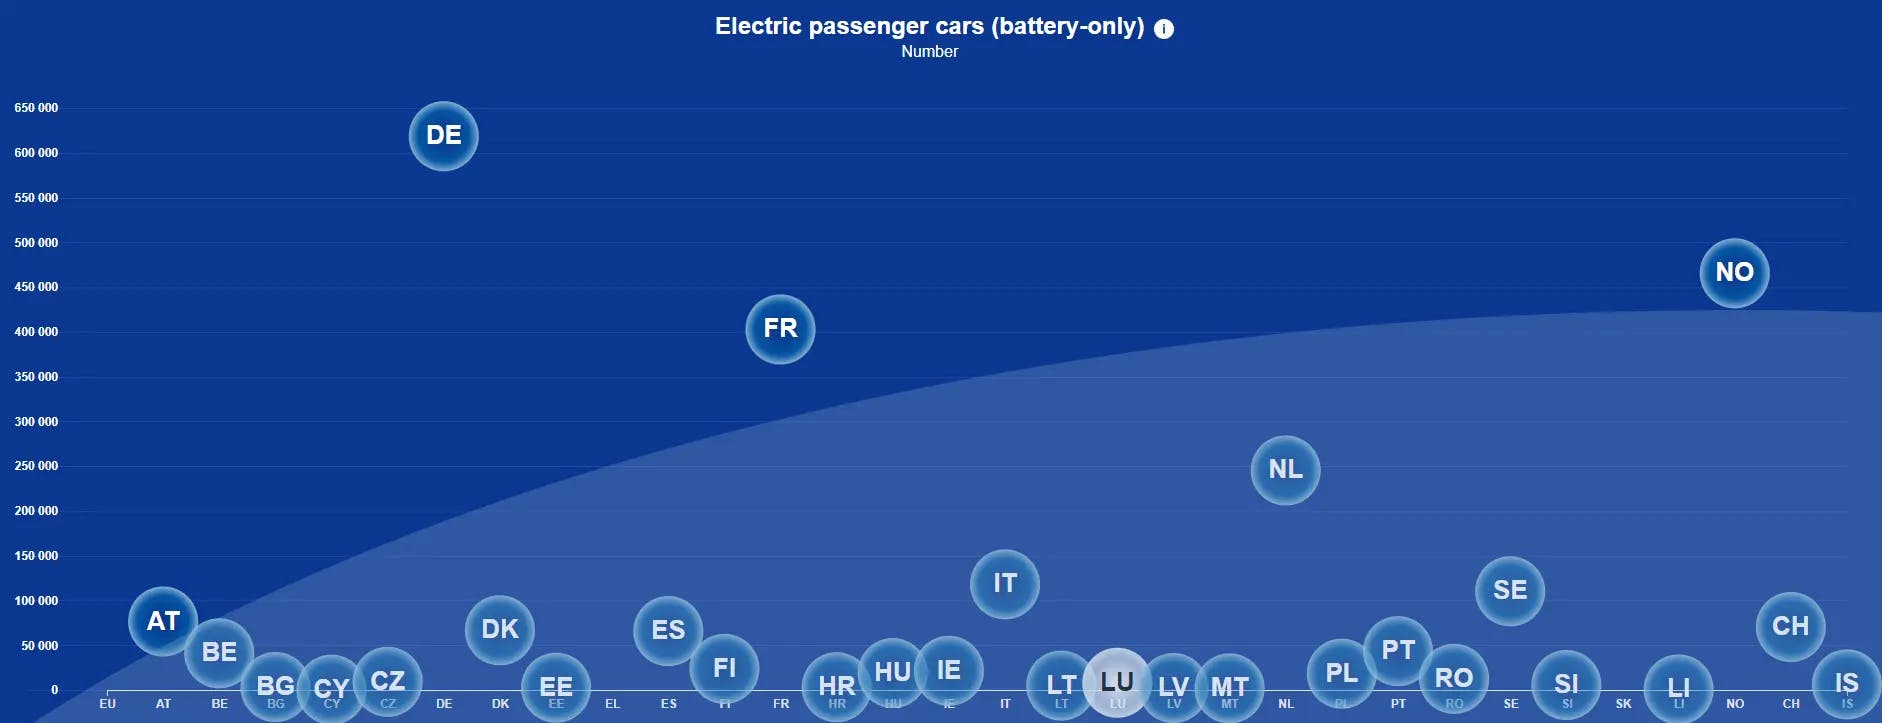 Electric passenger cars in EU